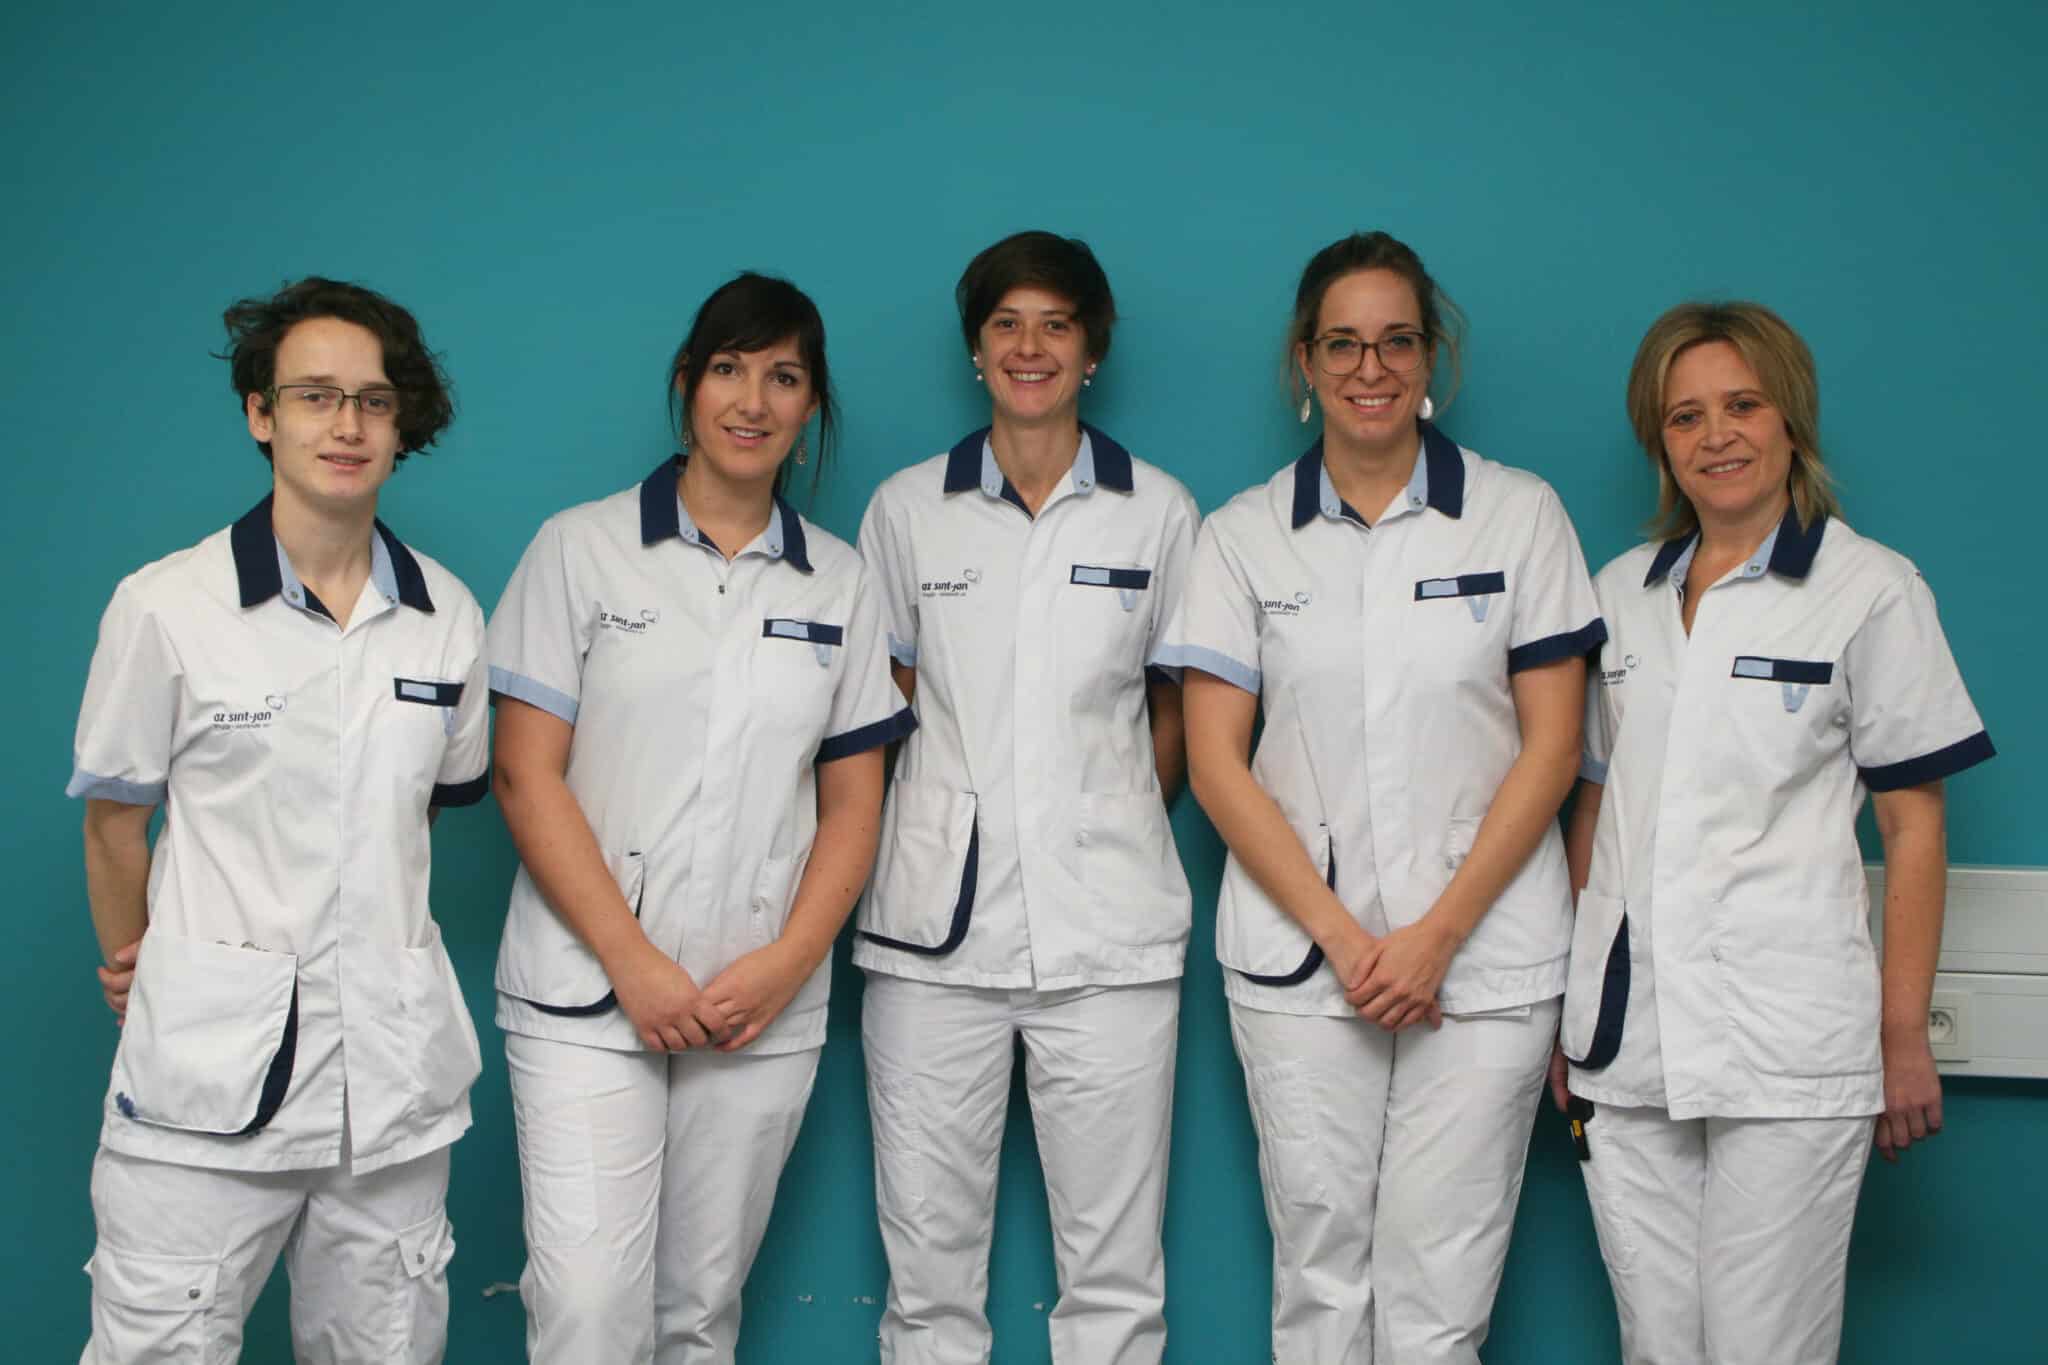 Een toegewijd team van 5 verpleegkundigen leert de patiënten de peritoneale dialysetechniek aan